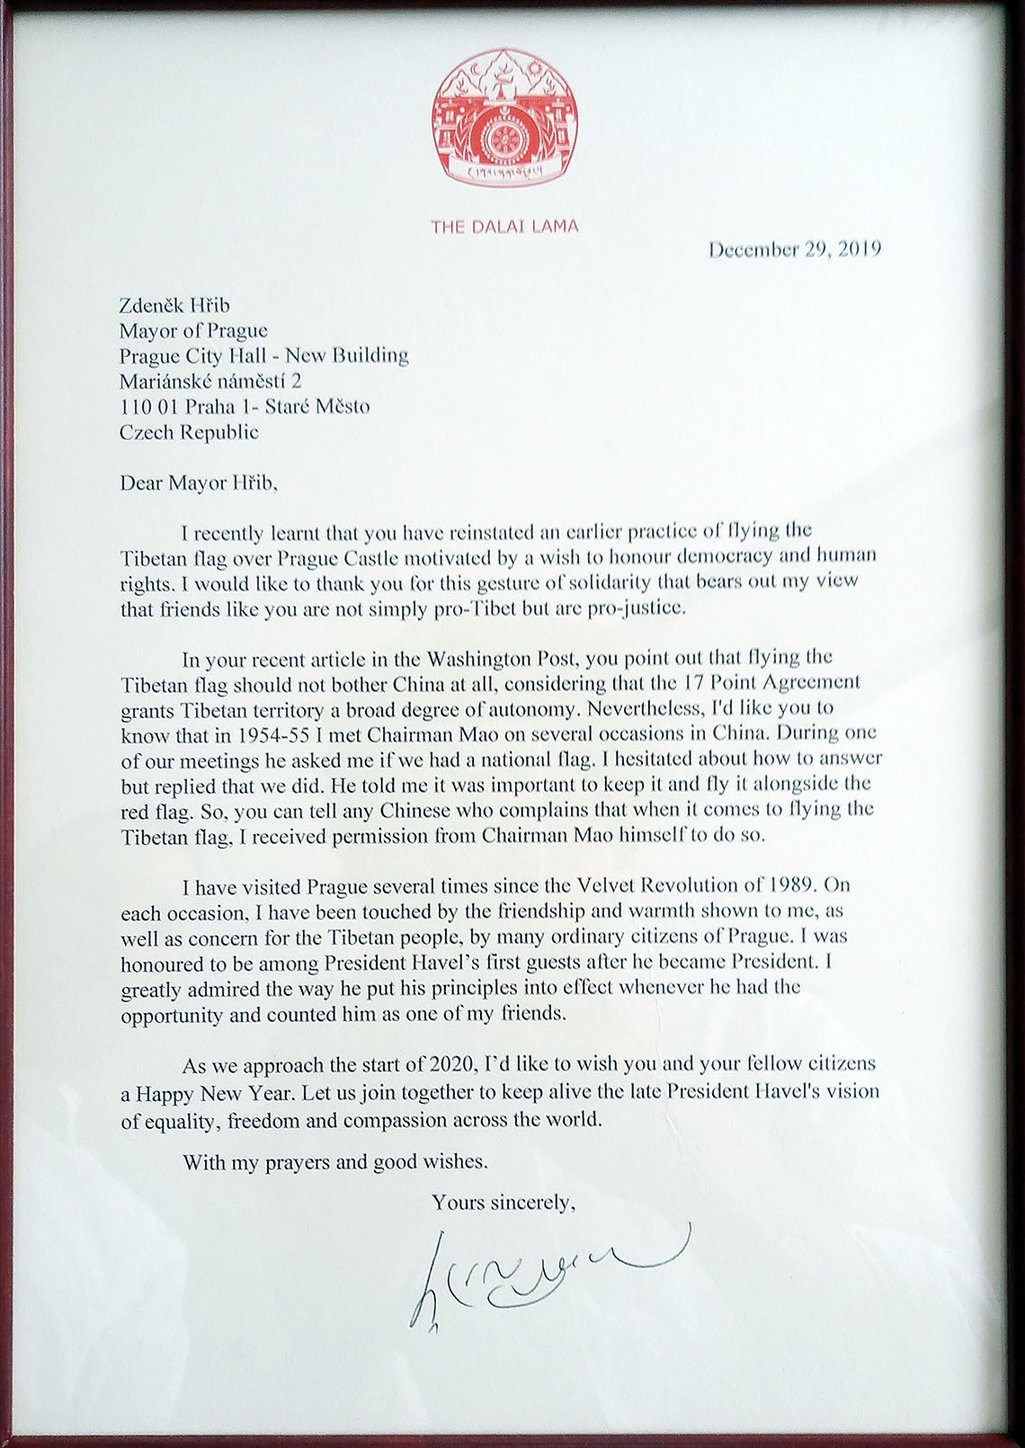 Dalai Lama's letter.